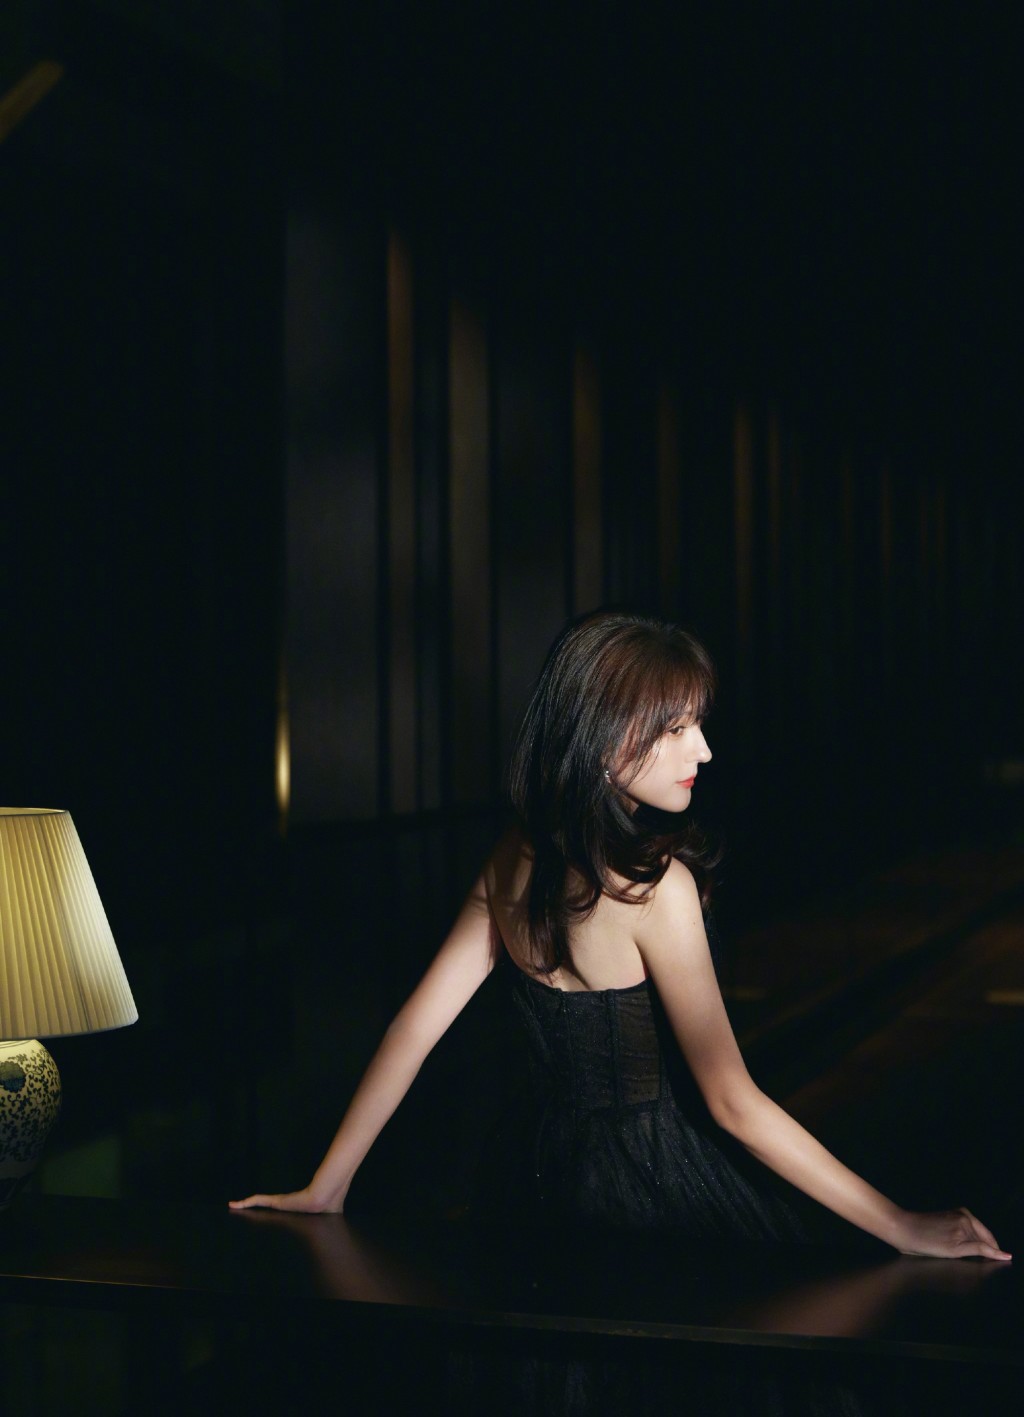 热依扎黑色薄纱礼裙优雅气质写真图片